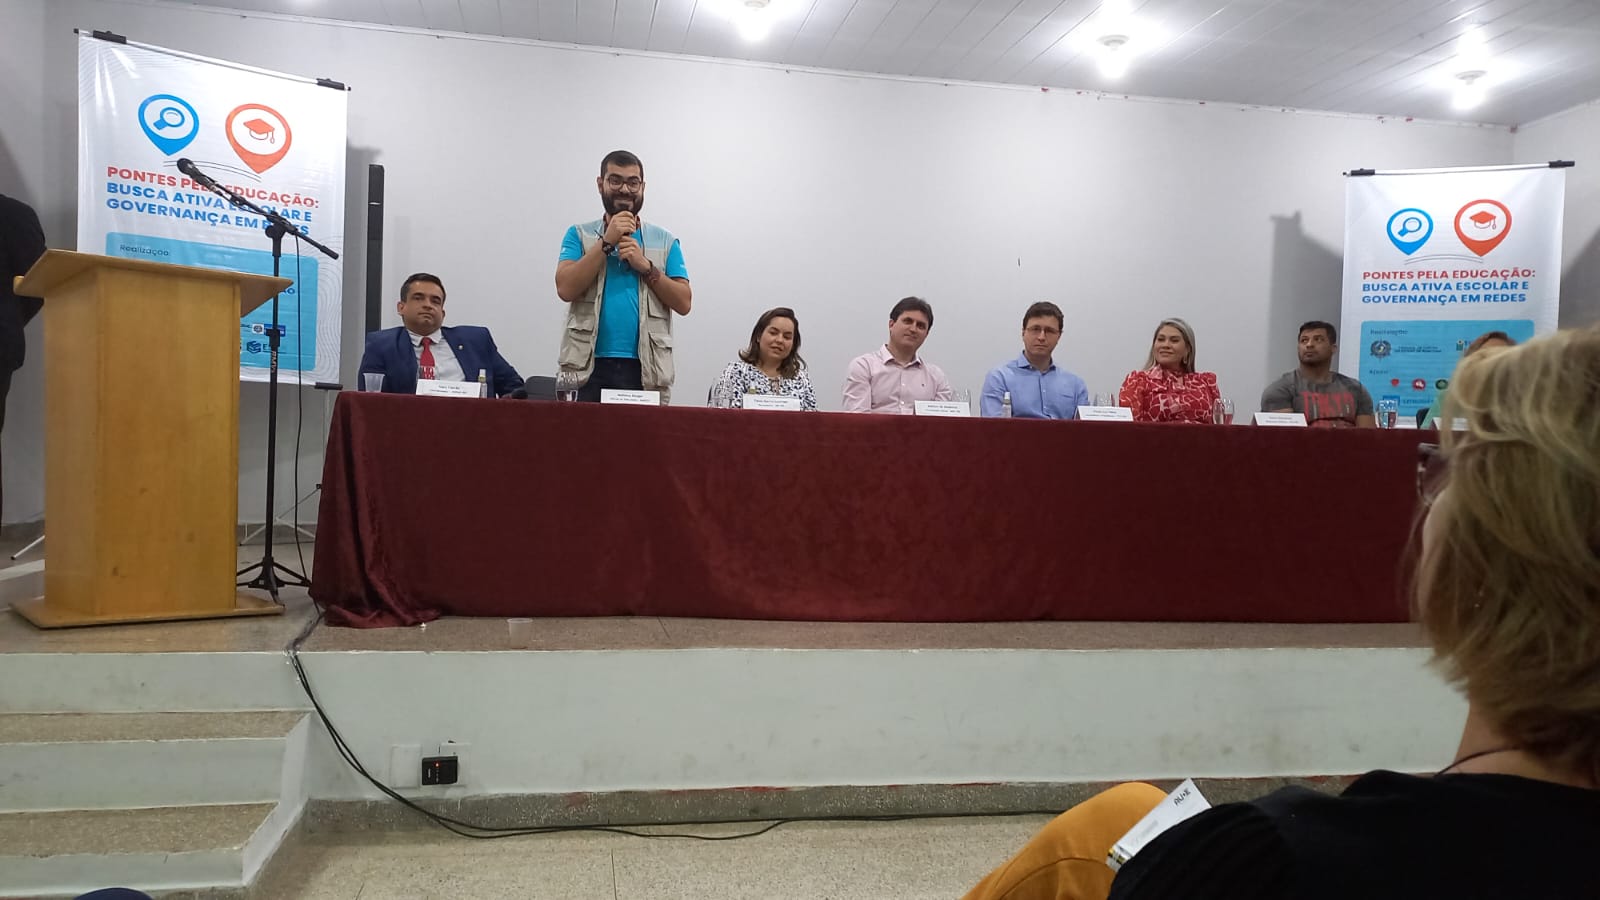 Evento acontece em Ariquemes/RO e tem como objetivo aprimorar o controle das políticas educacionais aos municípios e ao Estado de Rondônia (Foto: Erli Oliveira)